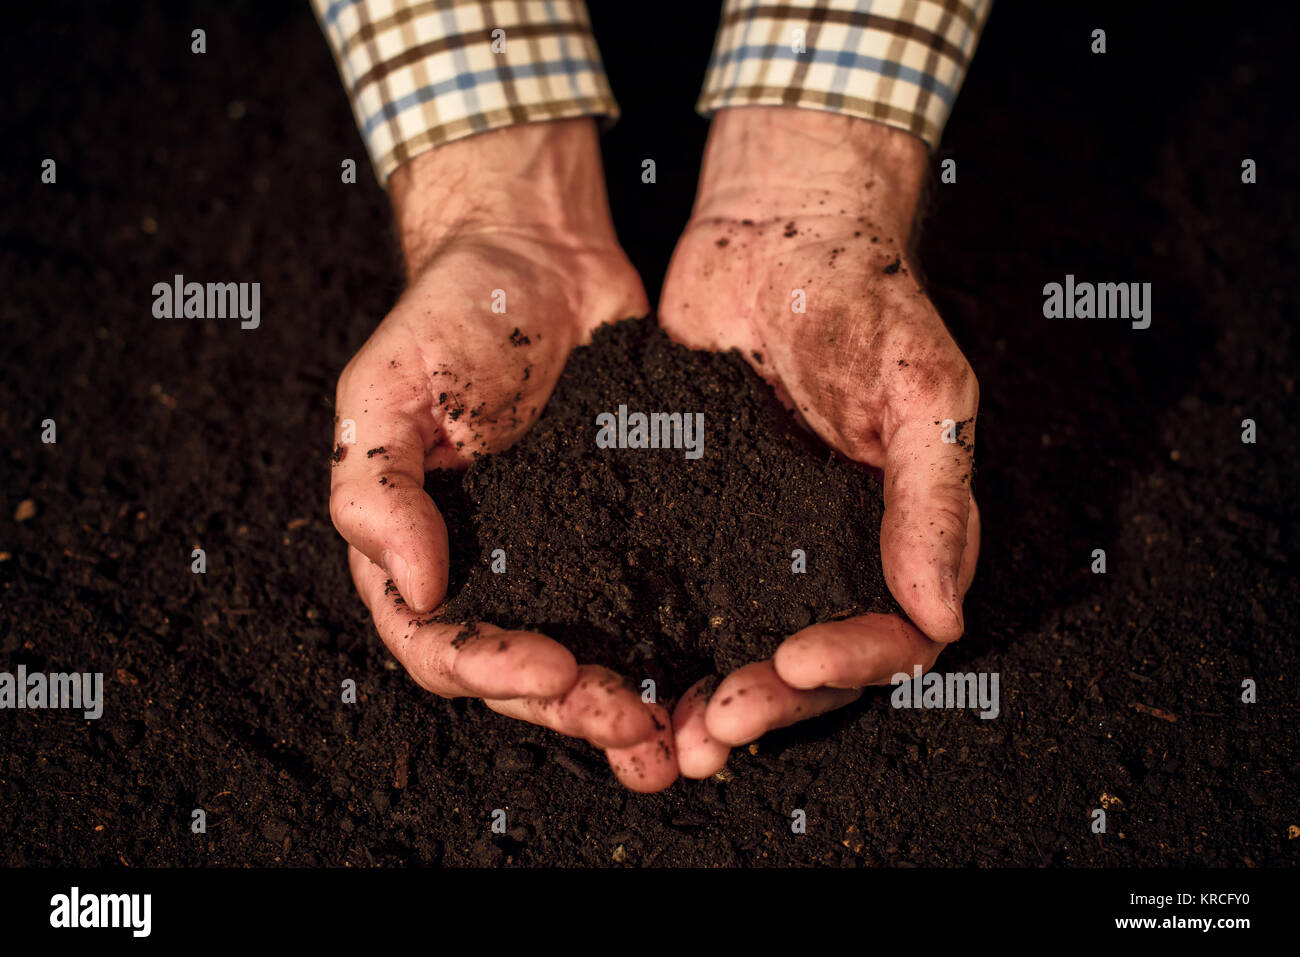 Bodenqualität in männlichen Gärtner Hände, gepflegte Schmutz Boden für Bio-Gärtnerei und Landwirtschaft Stockfoto